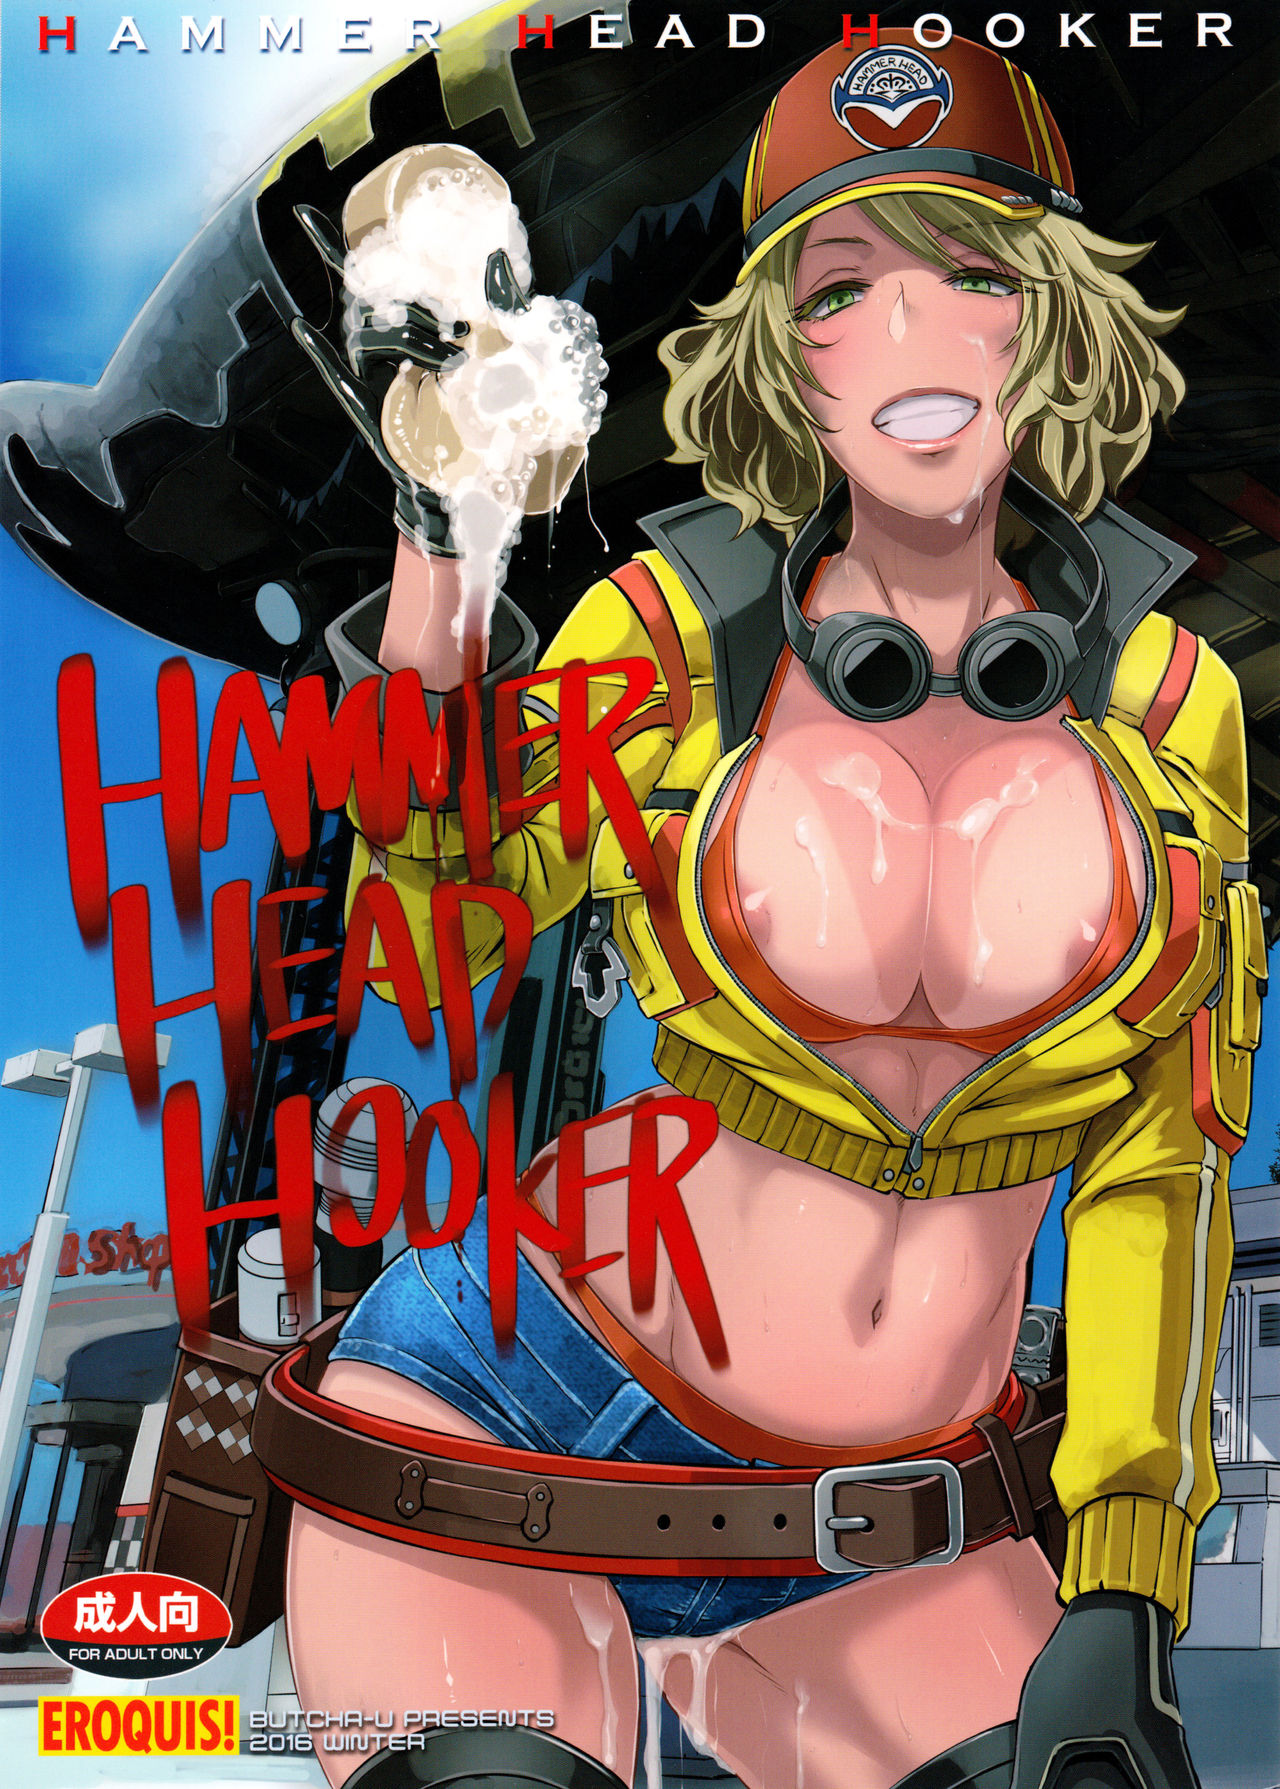 Hammer Head Hooker Final Fantasy Xv 01